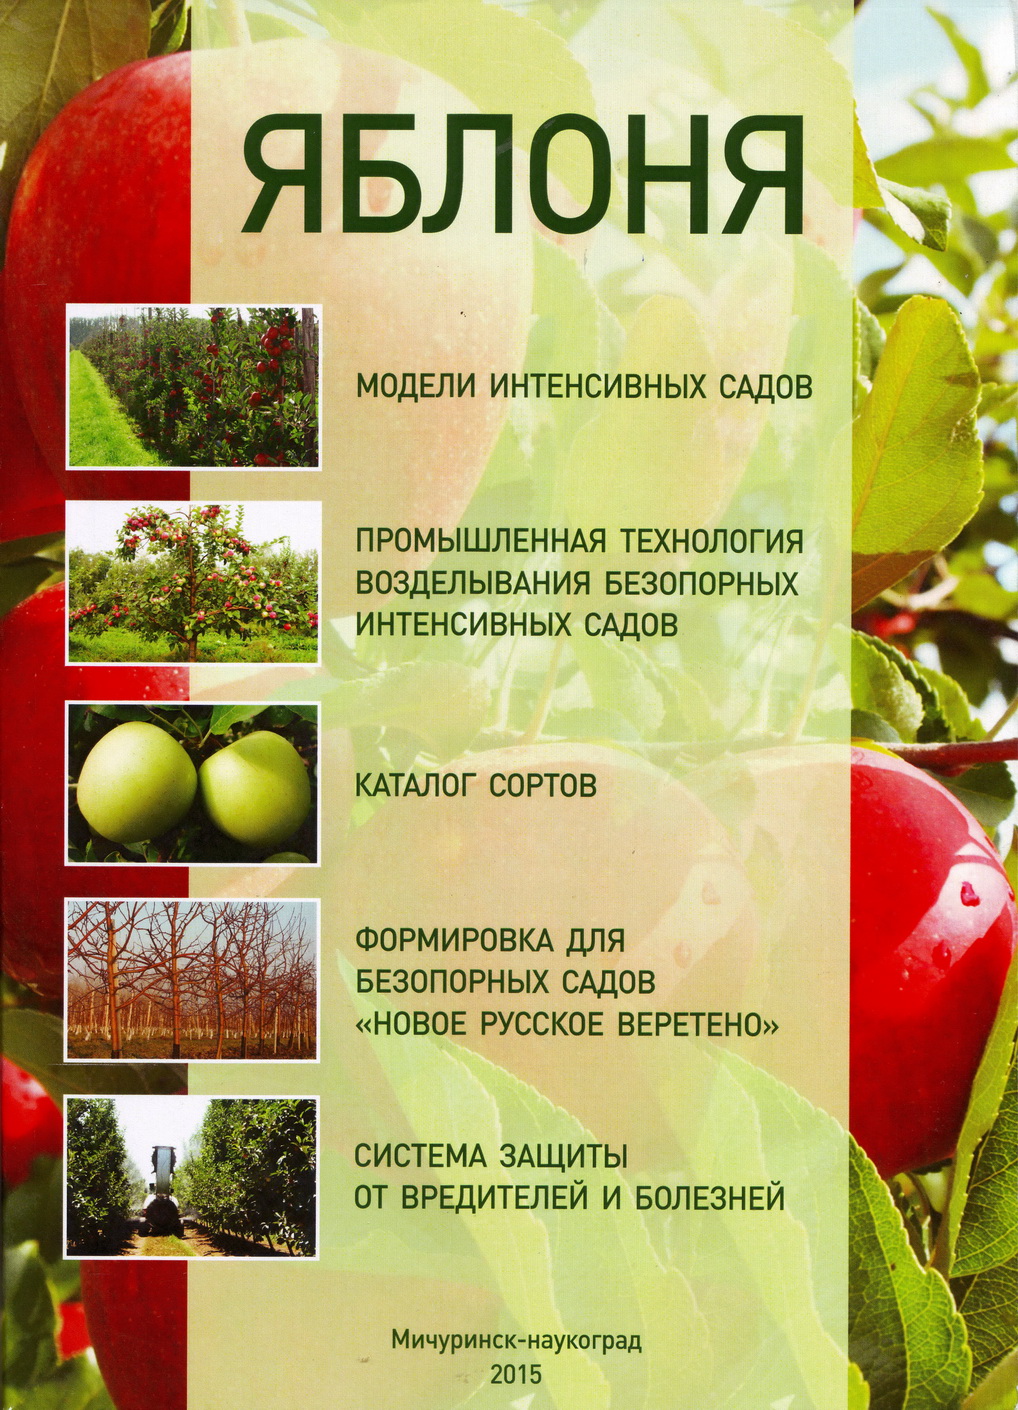 «Практическое руководство по возделыванию интенсивных садов яблони»